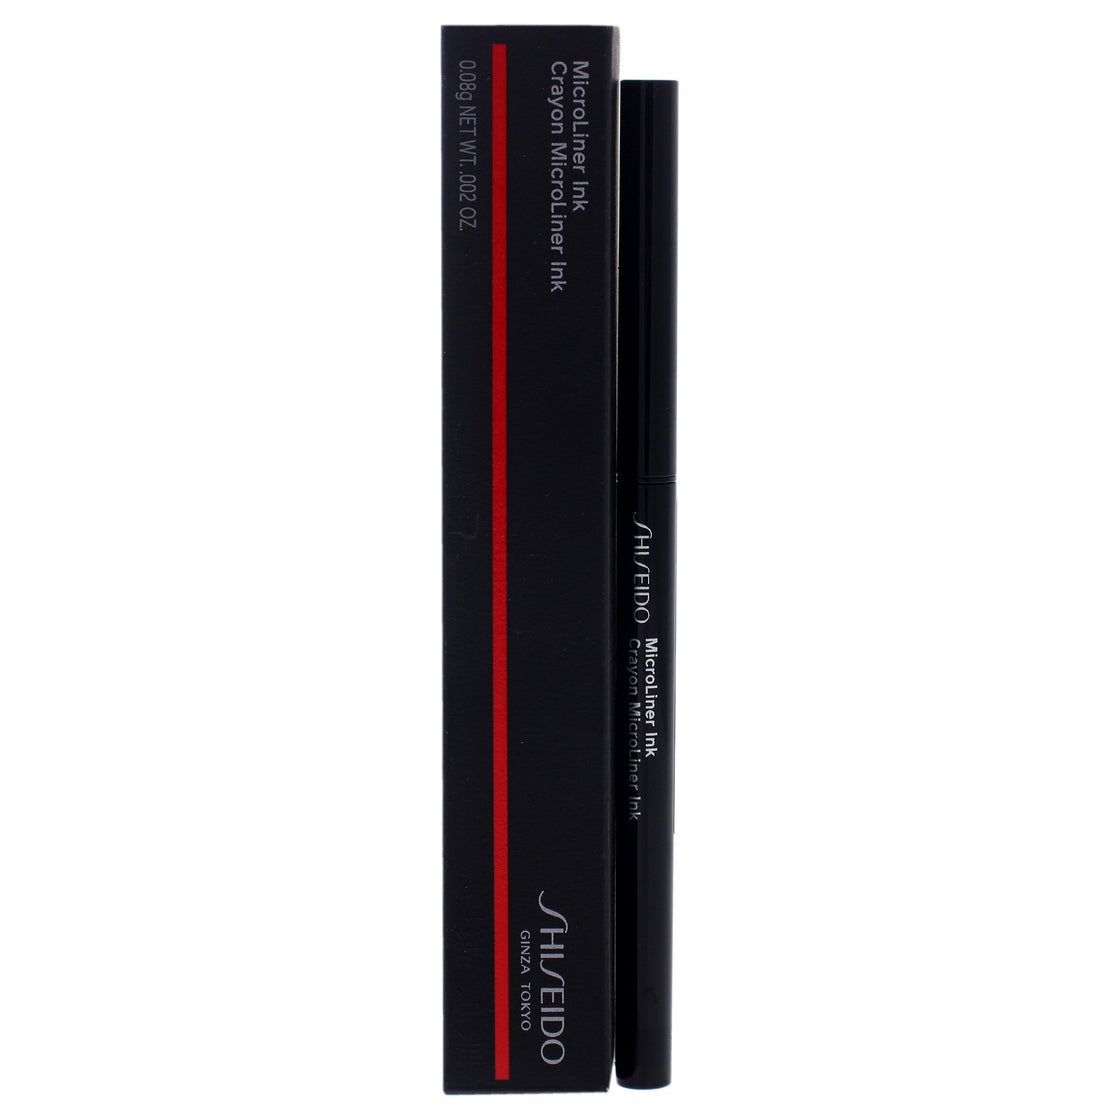 MicroLiner Ink Eyeliner - 01 Black by Shiseido for Women - 0.002 oz Eyeliner